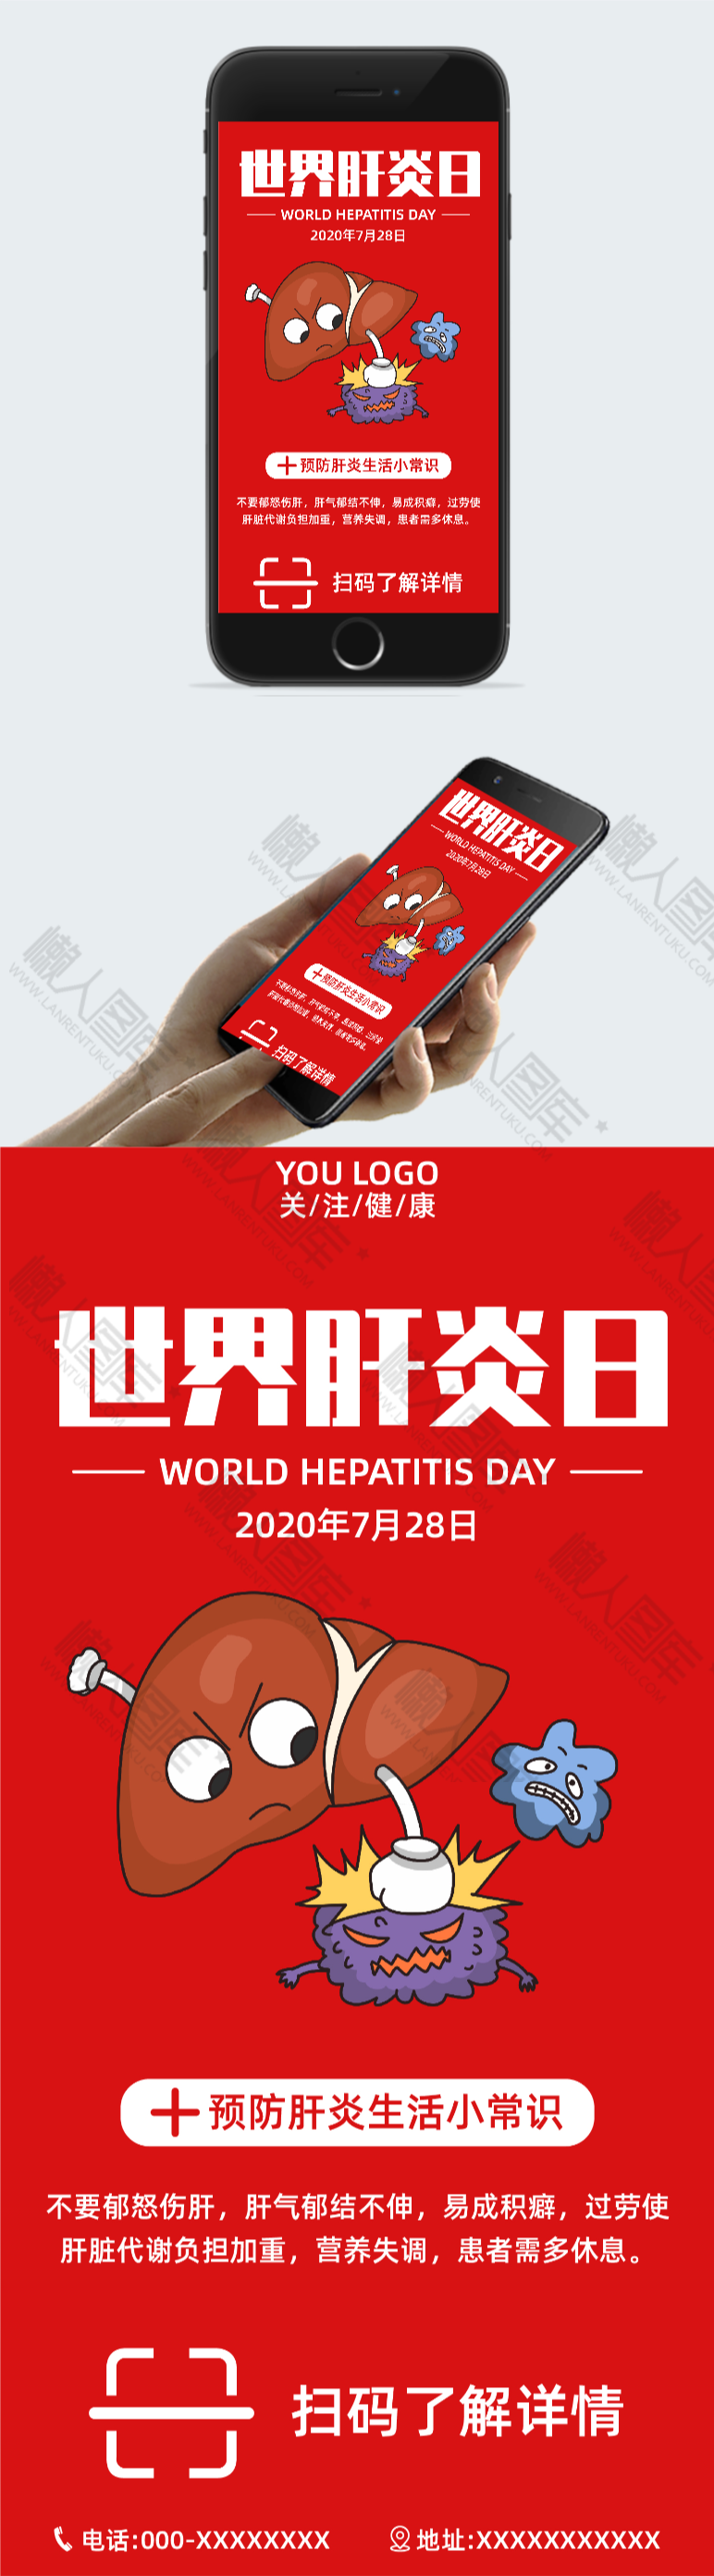 728世界肝炎日宣传海报